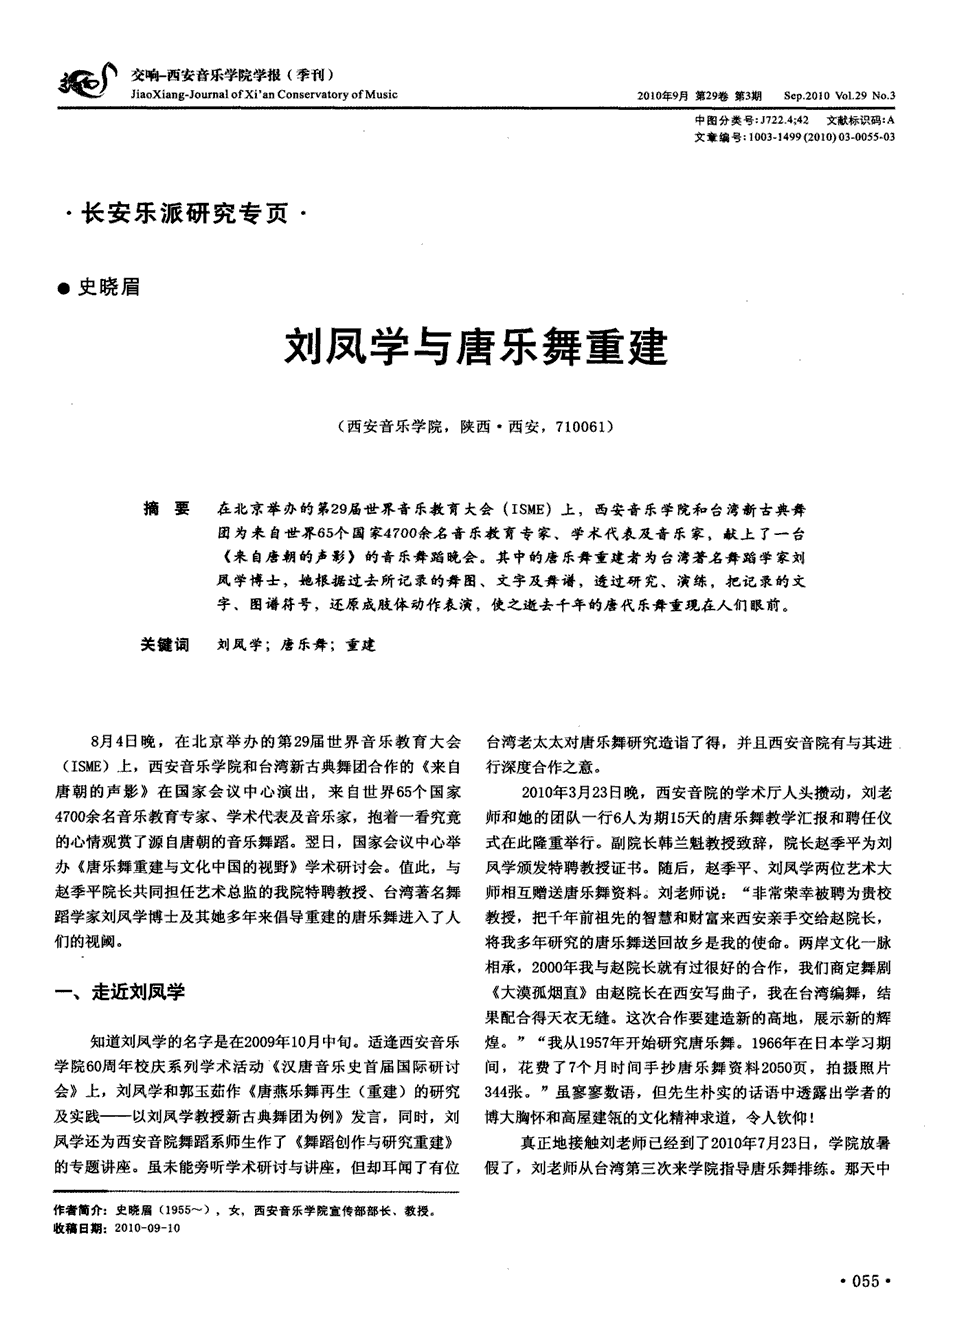 期刊刘凤学与唐乐舞重建被引量:1 在北京举办的第29届世界音乐教育